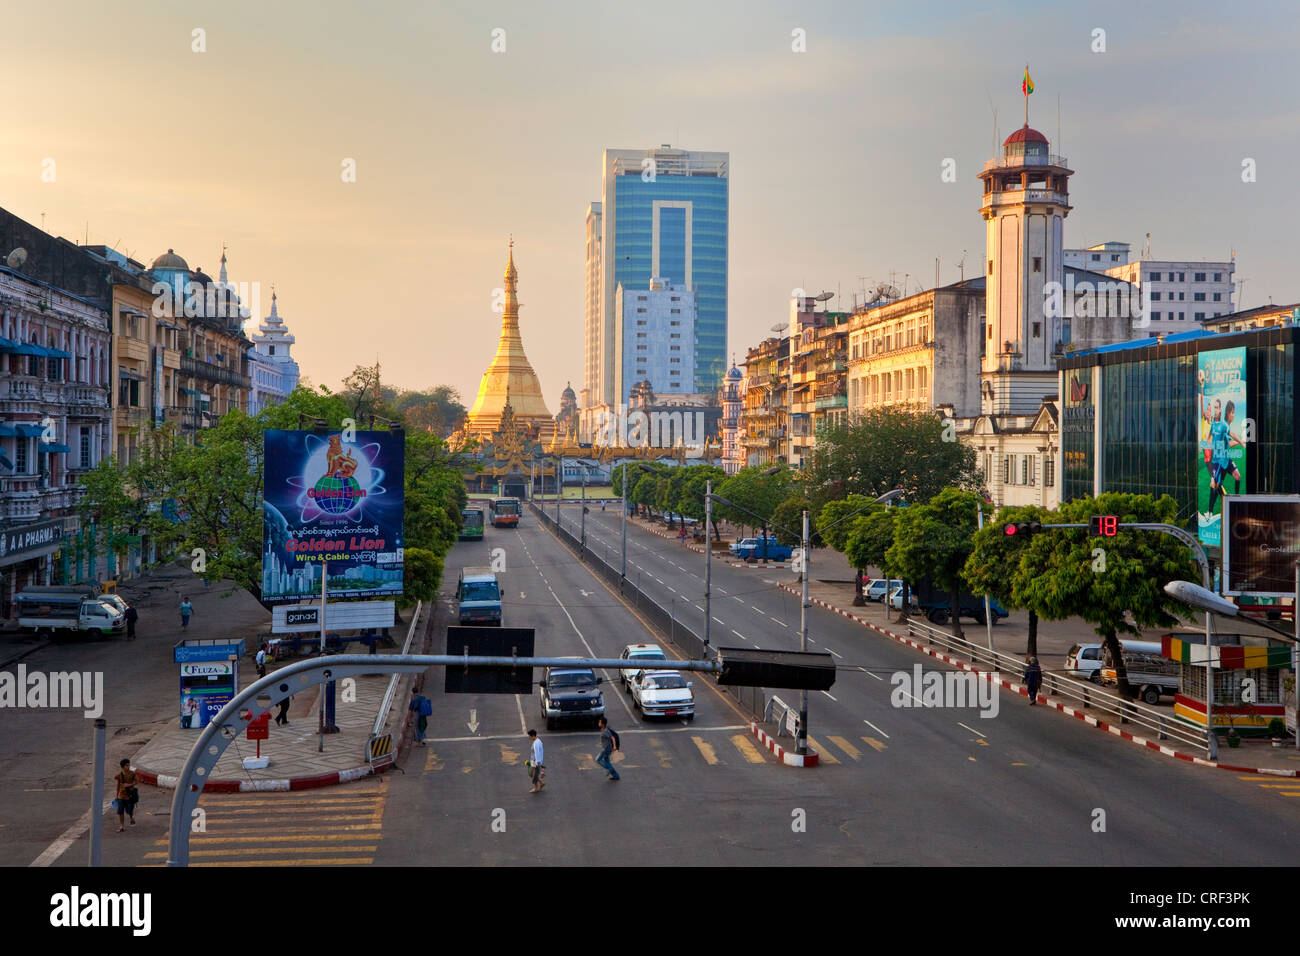 Myanmar Birmania, Yangon. Sule Pagoda Road, la mattina presto. La giustapposizione di tradizionali e moderni stili architettonici. Foto Stock